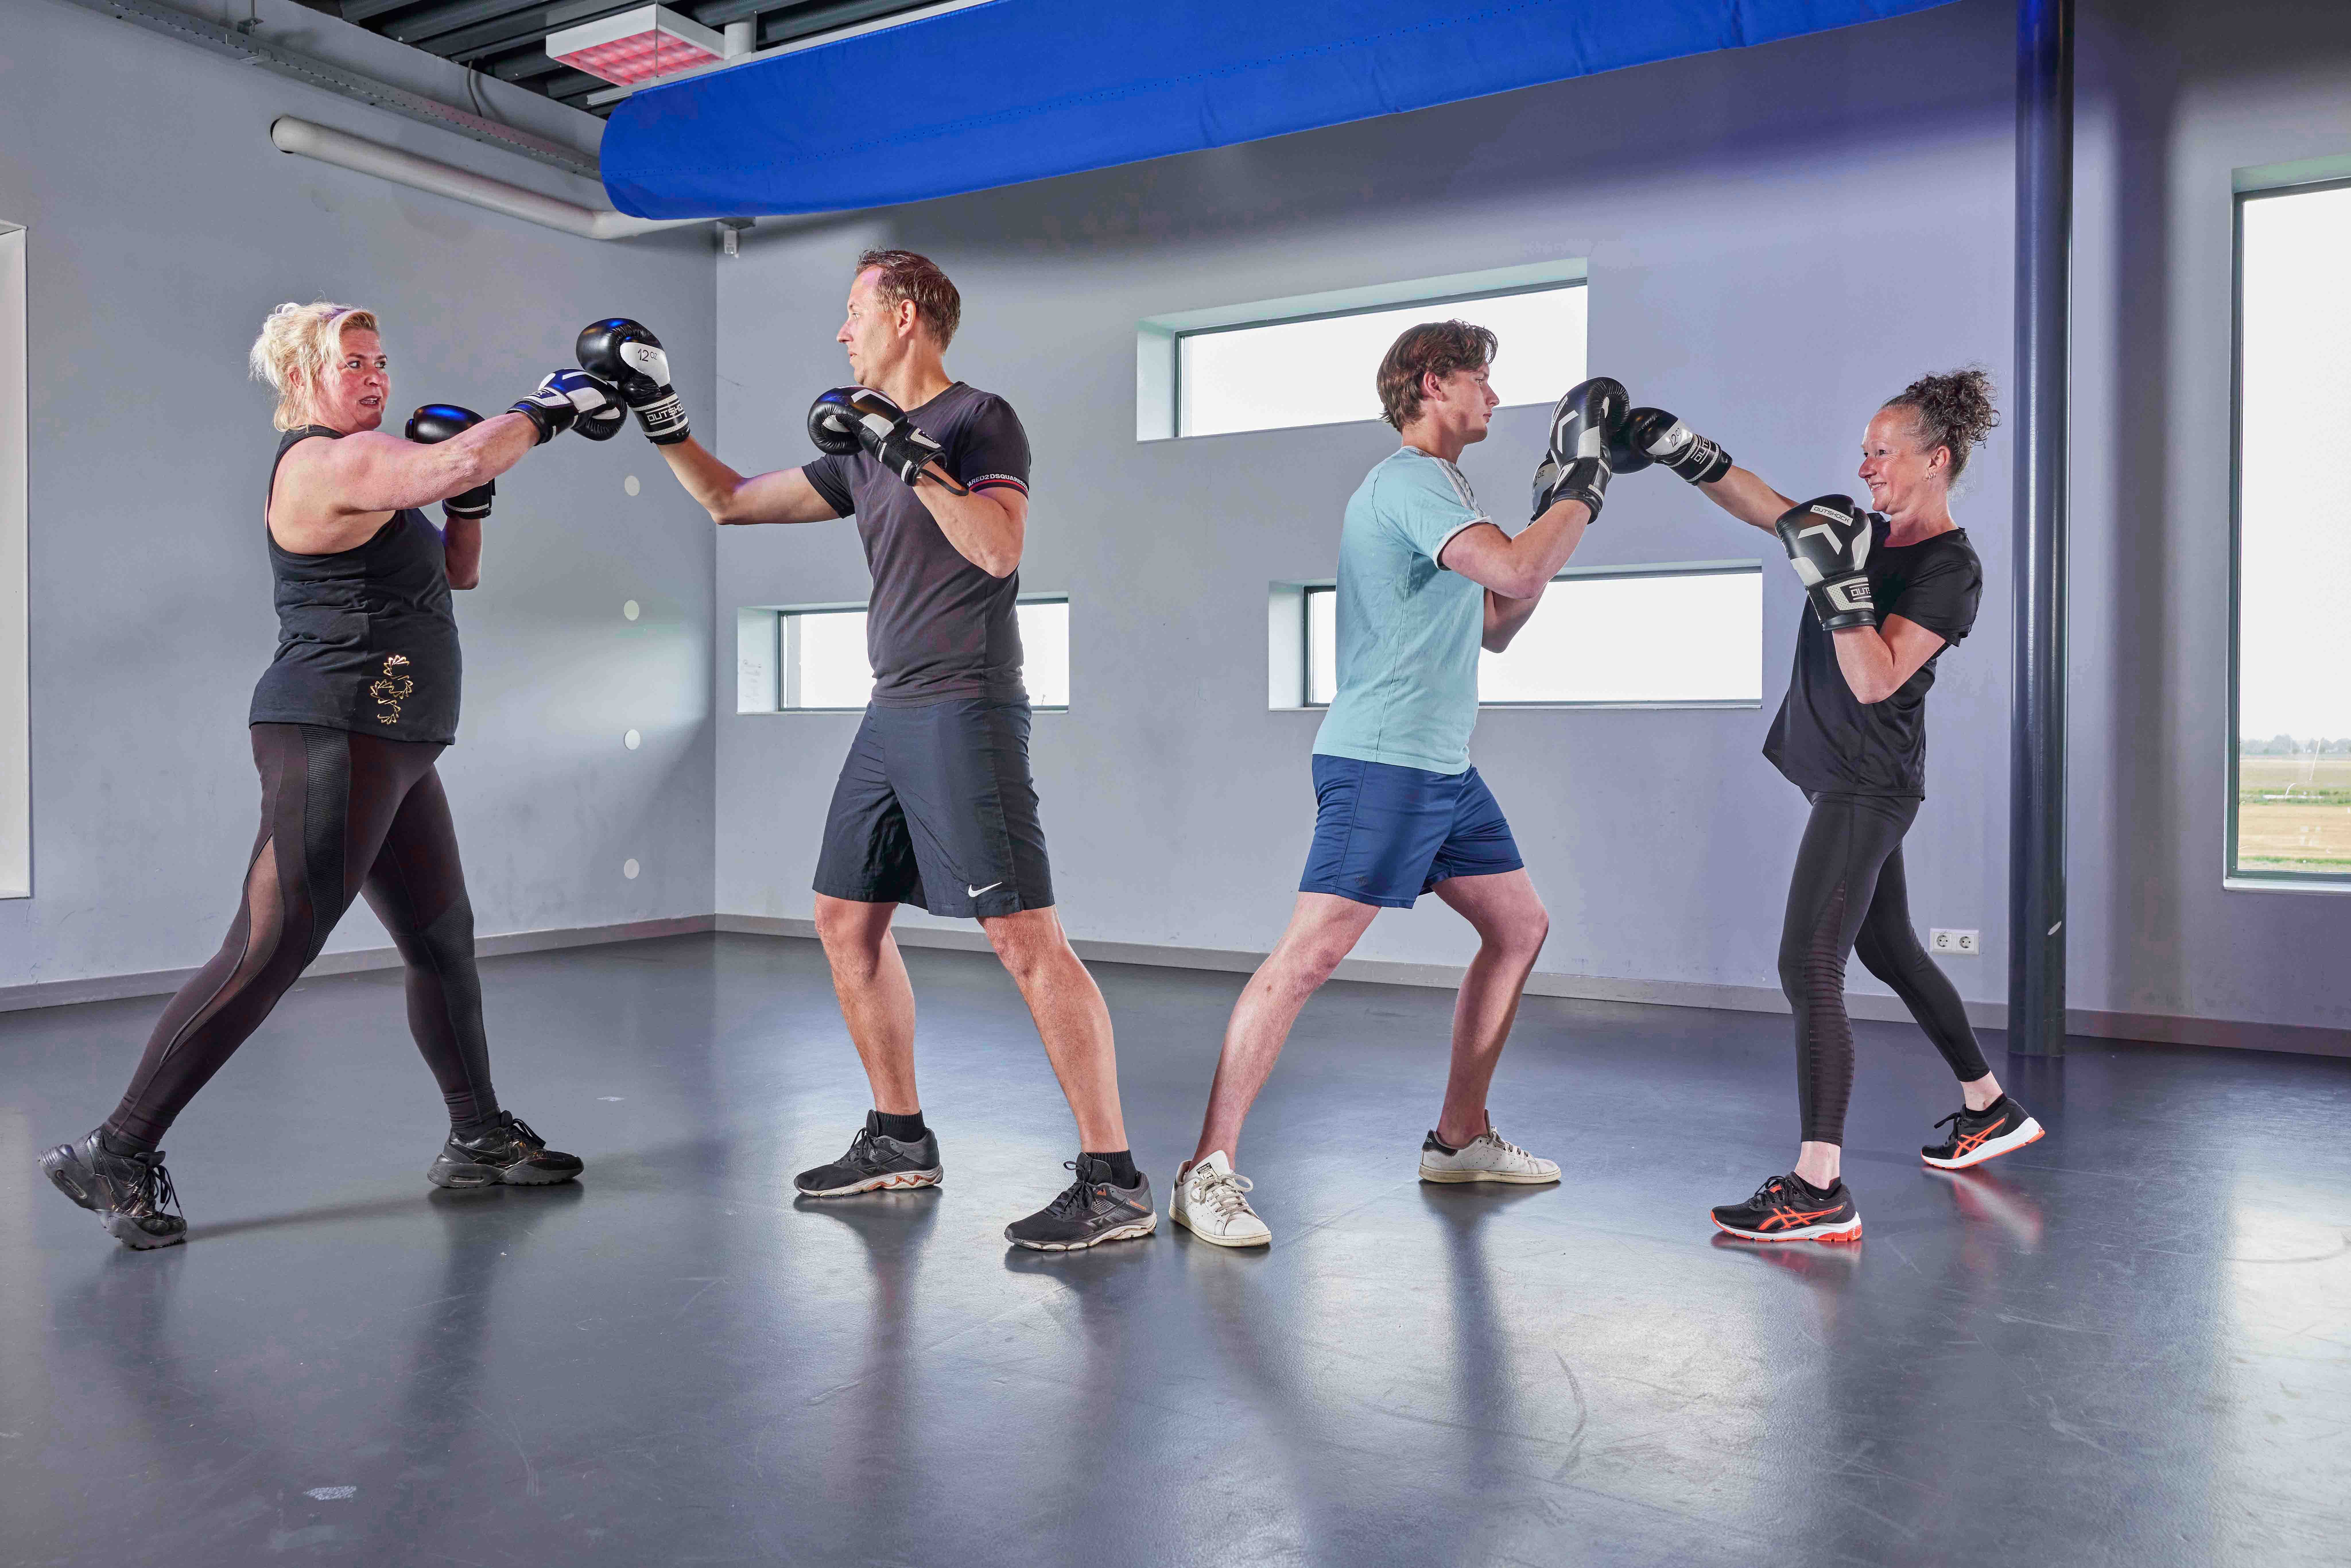 Twee mannen en twee vrouwen volgen een energieke boksles bij een Optisport healthclub, waarbij ze met elkaar sparren. 